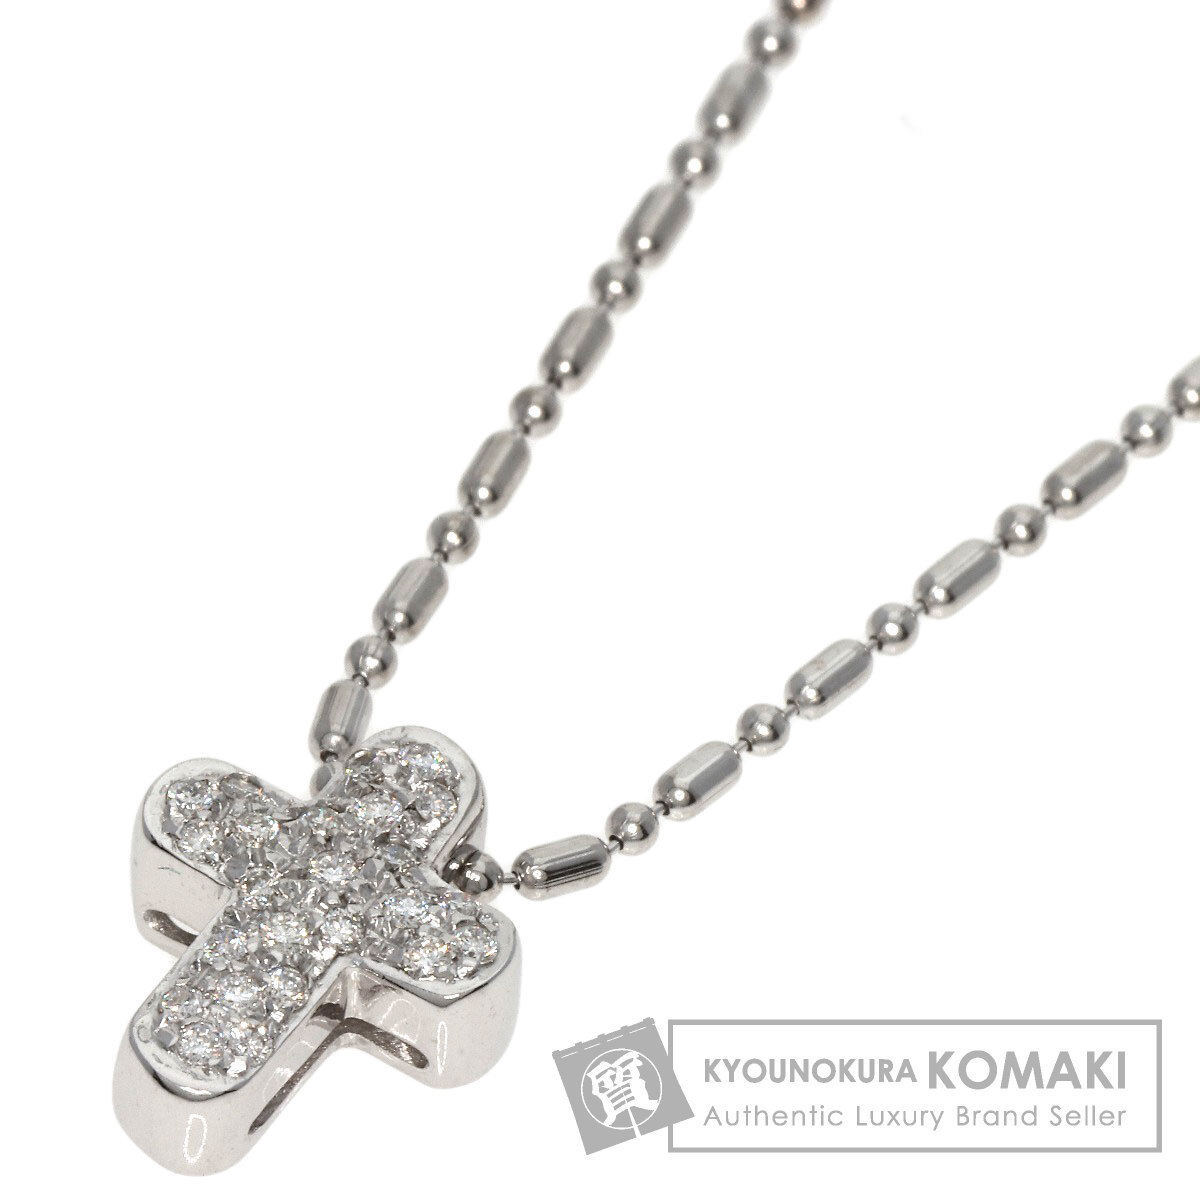 STAR JEWELRY  звезда  ...  крест    алмаз   ожерелье  K18 белый  золотой   женский   подержанный товар 